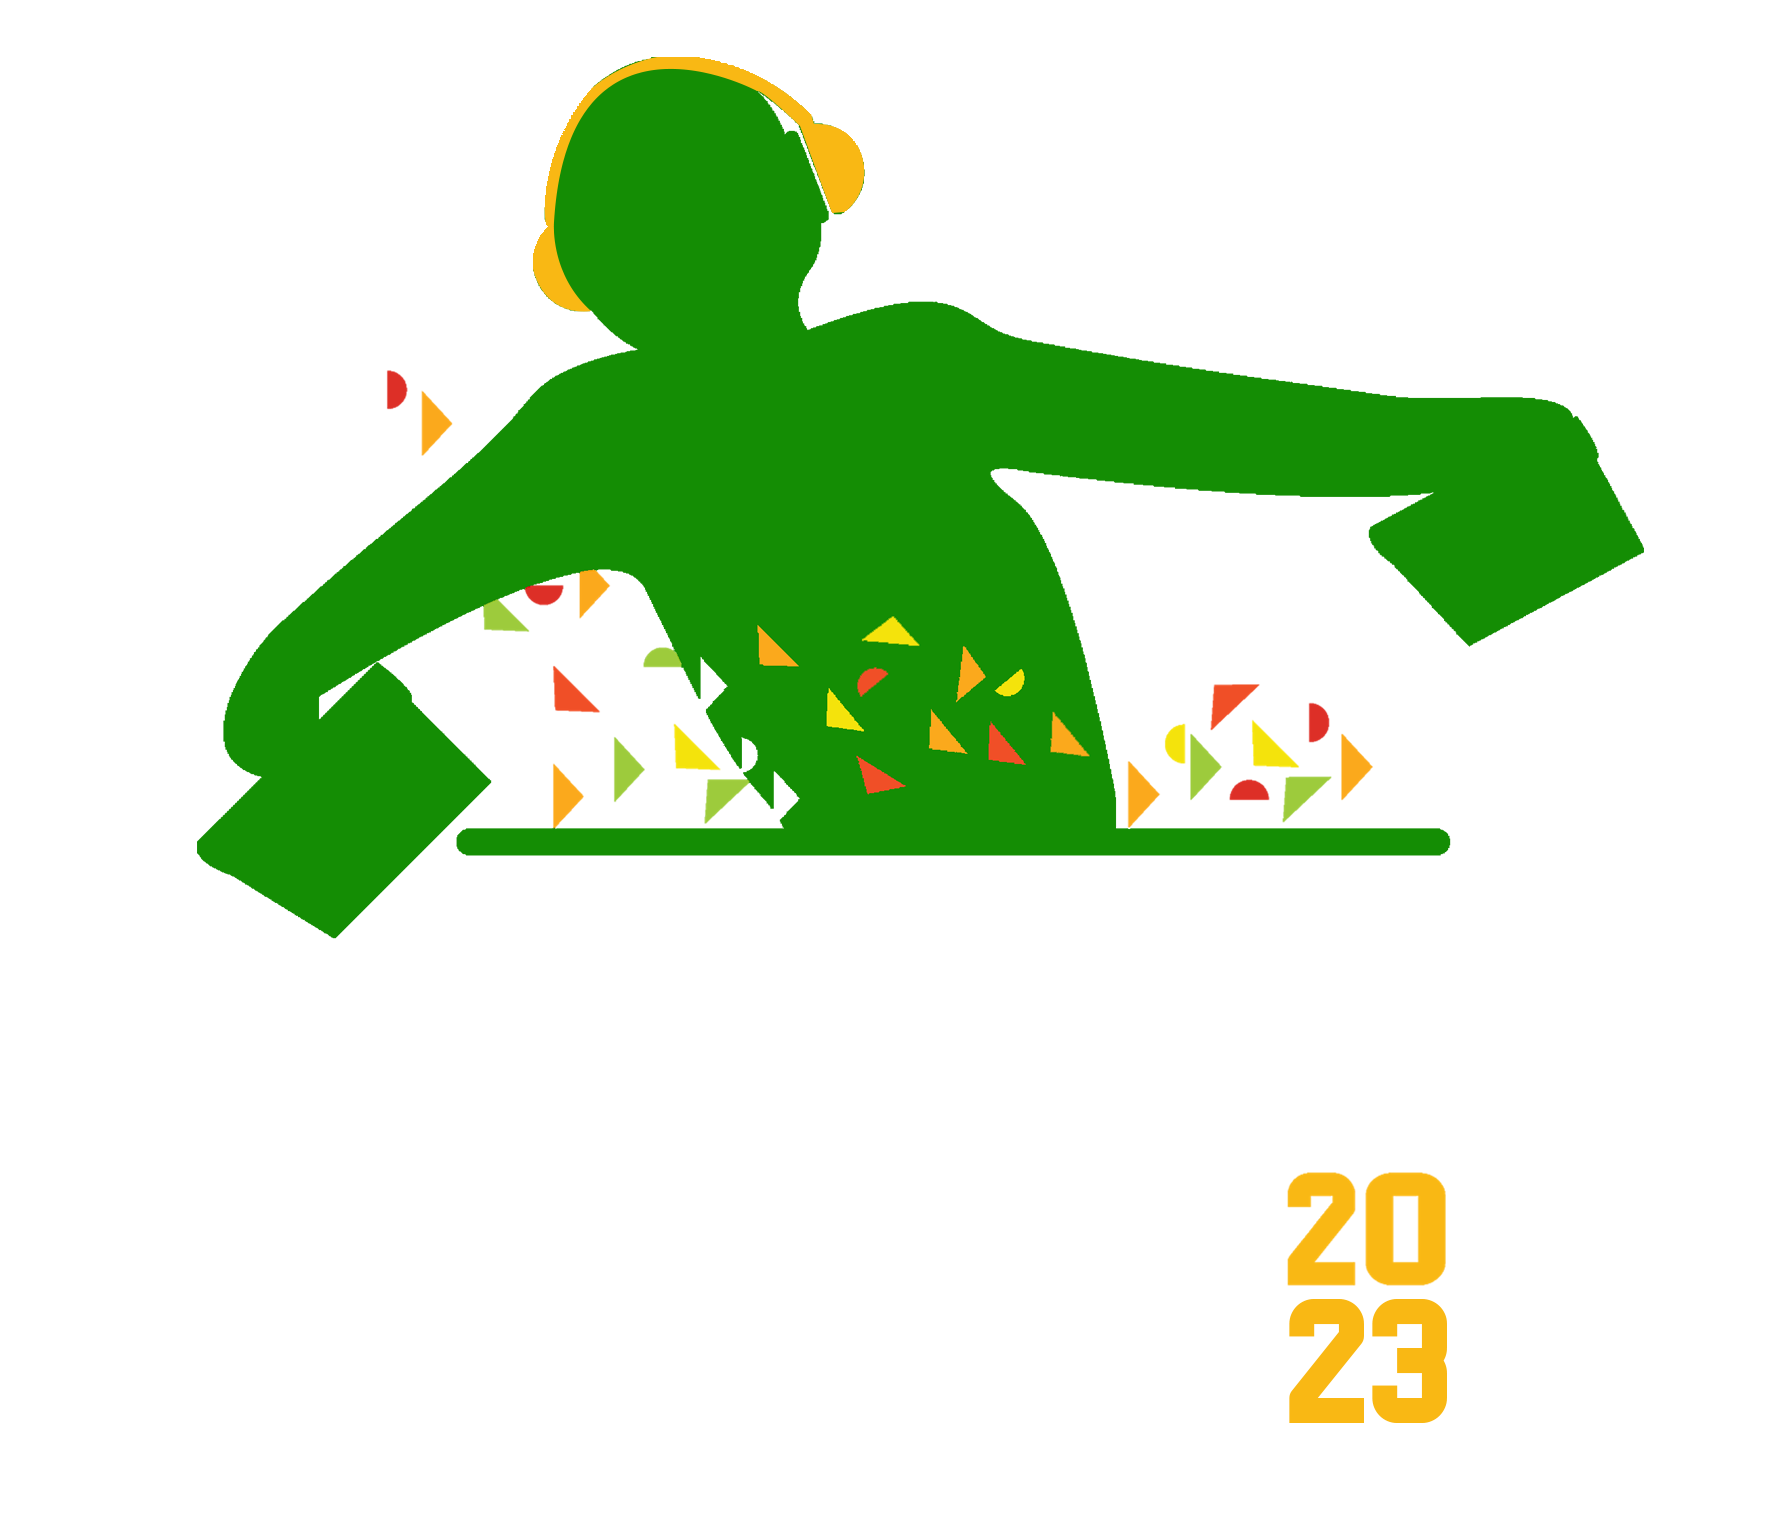 Kothu Fest